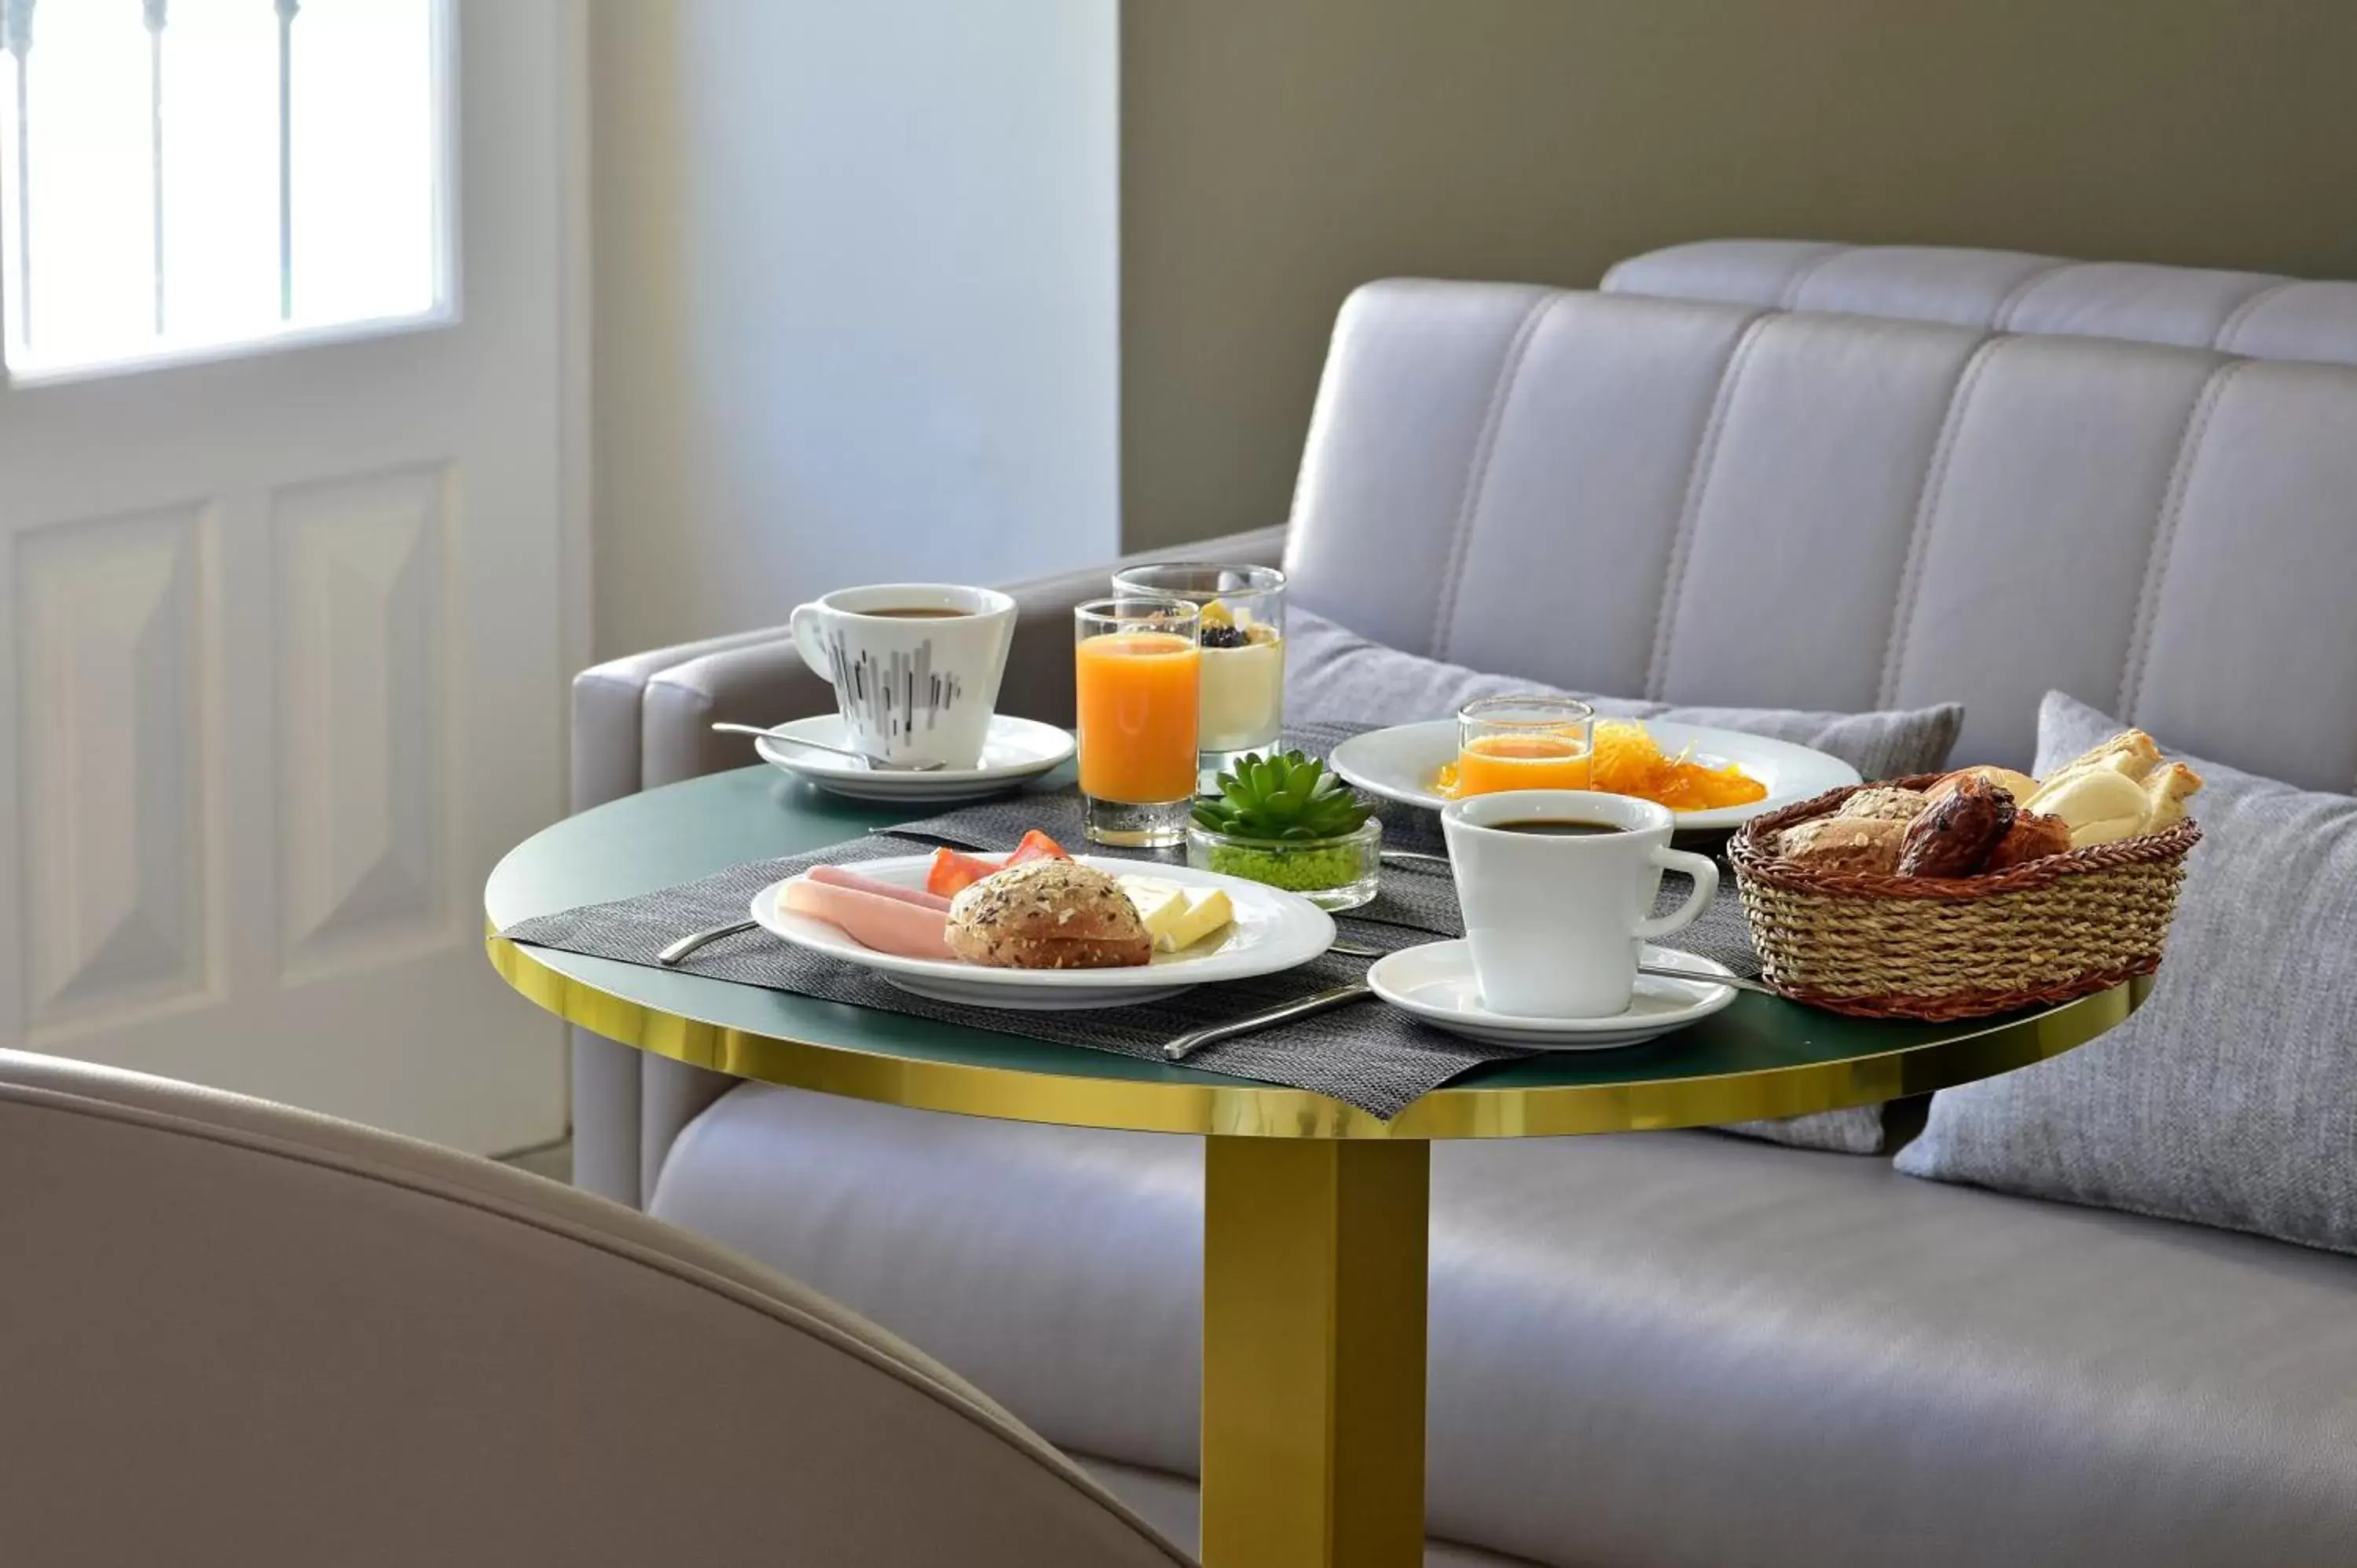 Buffet breakfast, Breakfast in Villa Termal Monchique - Hotel Central - by Unlock Hotels